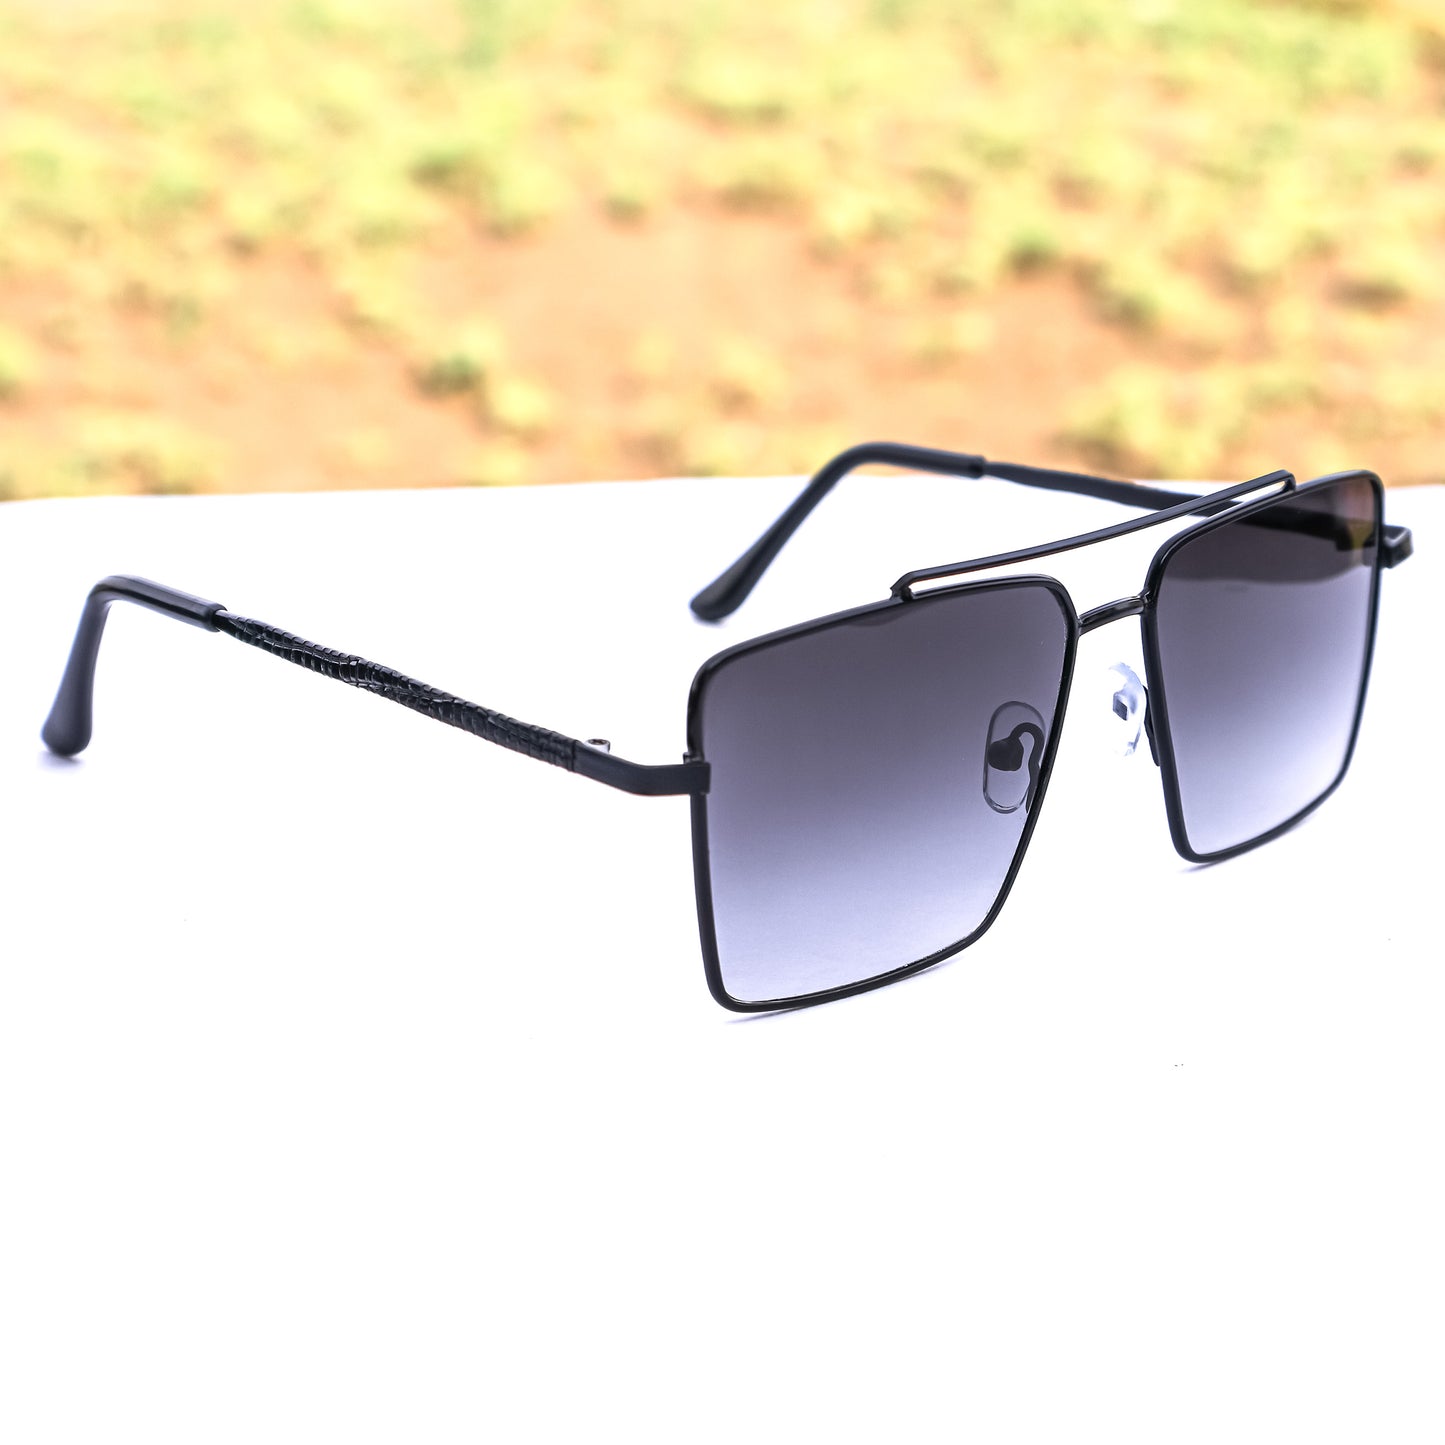 Jiebo Black Full Rim Square Sunglasses